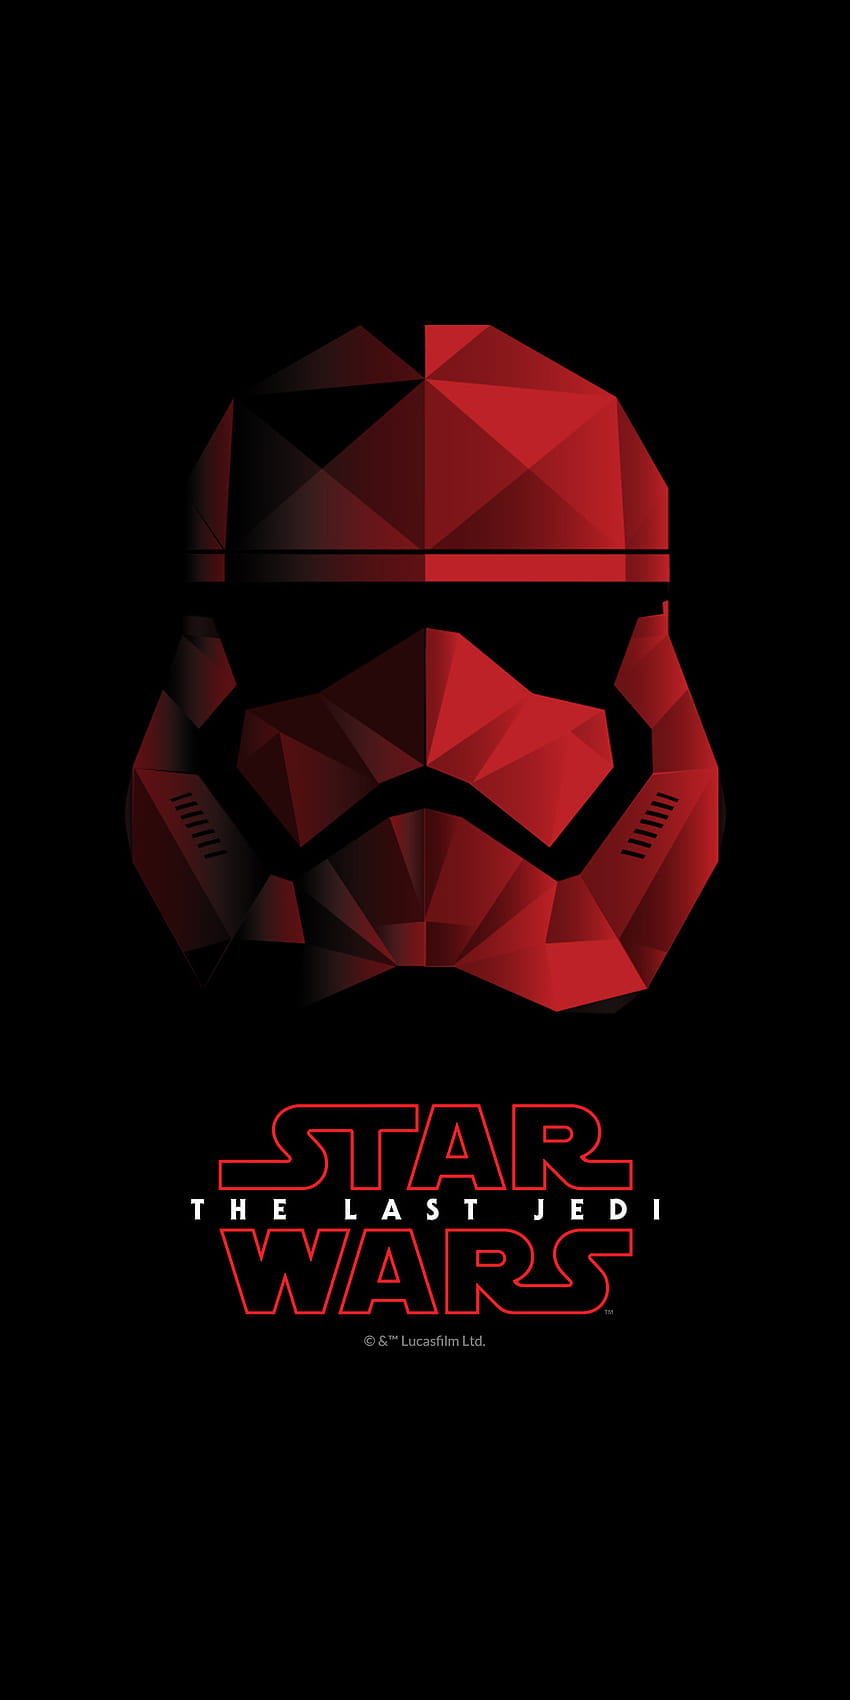 1080x2160] OnePlus 5T Star Wars Special Edition : Amoledhintergründe, schwarze amolierte Star Wars HD-Handy-Hintergrundbild